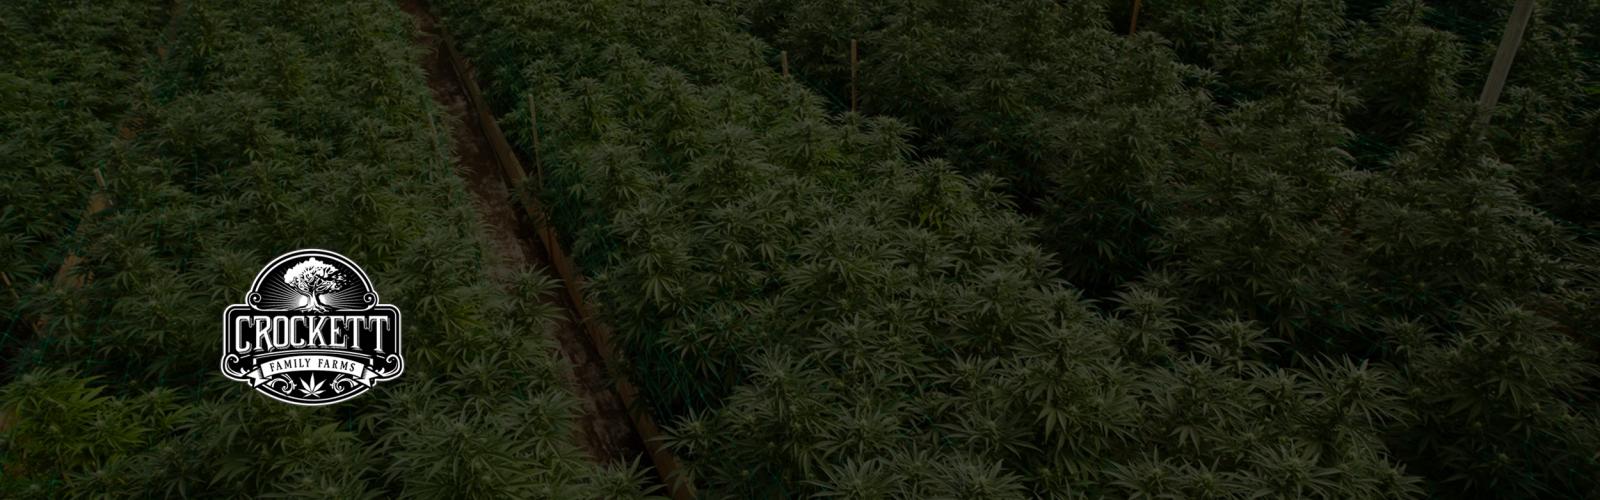 Graines de Cannabis Crockett Family Farms